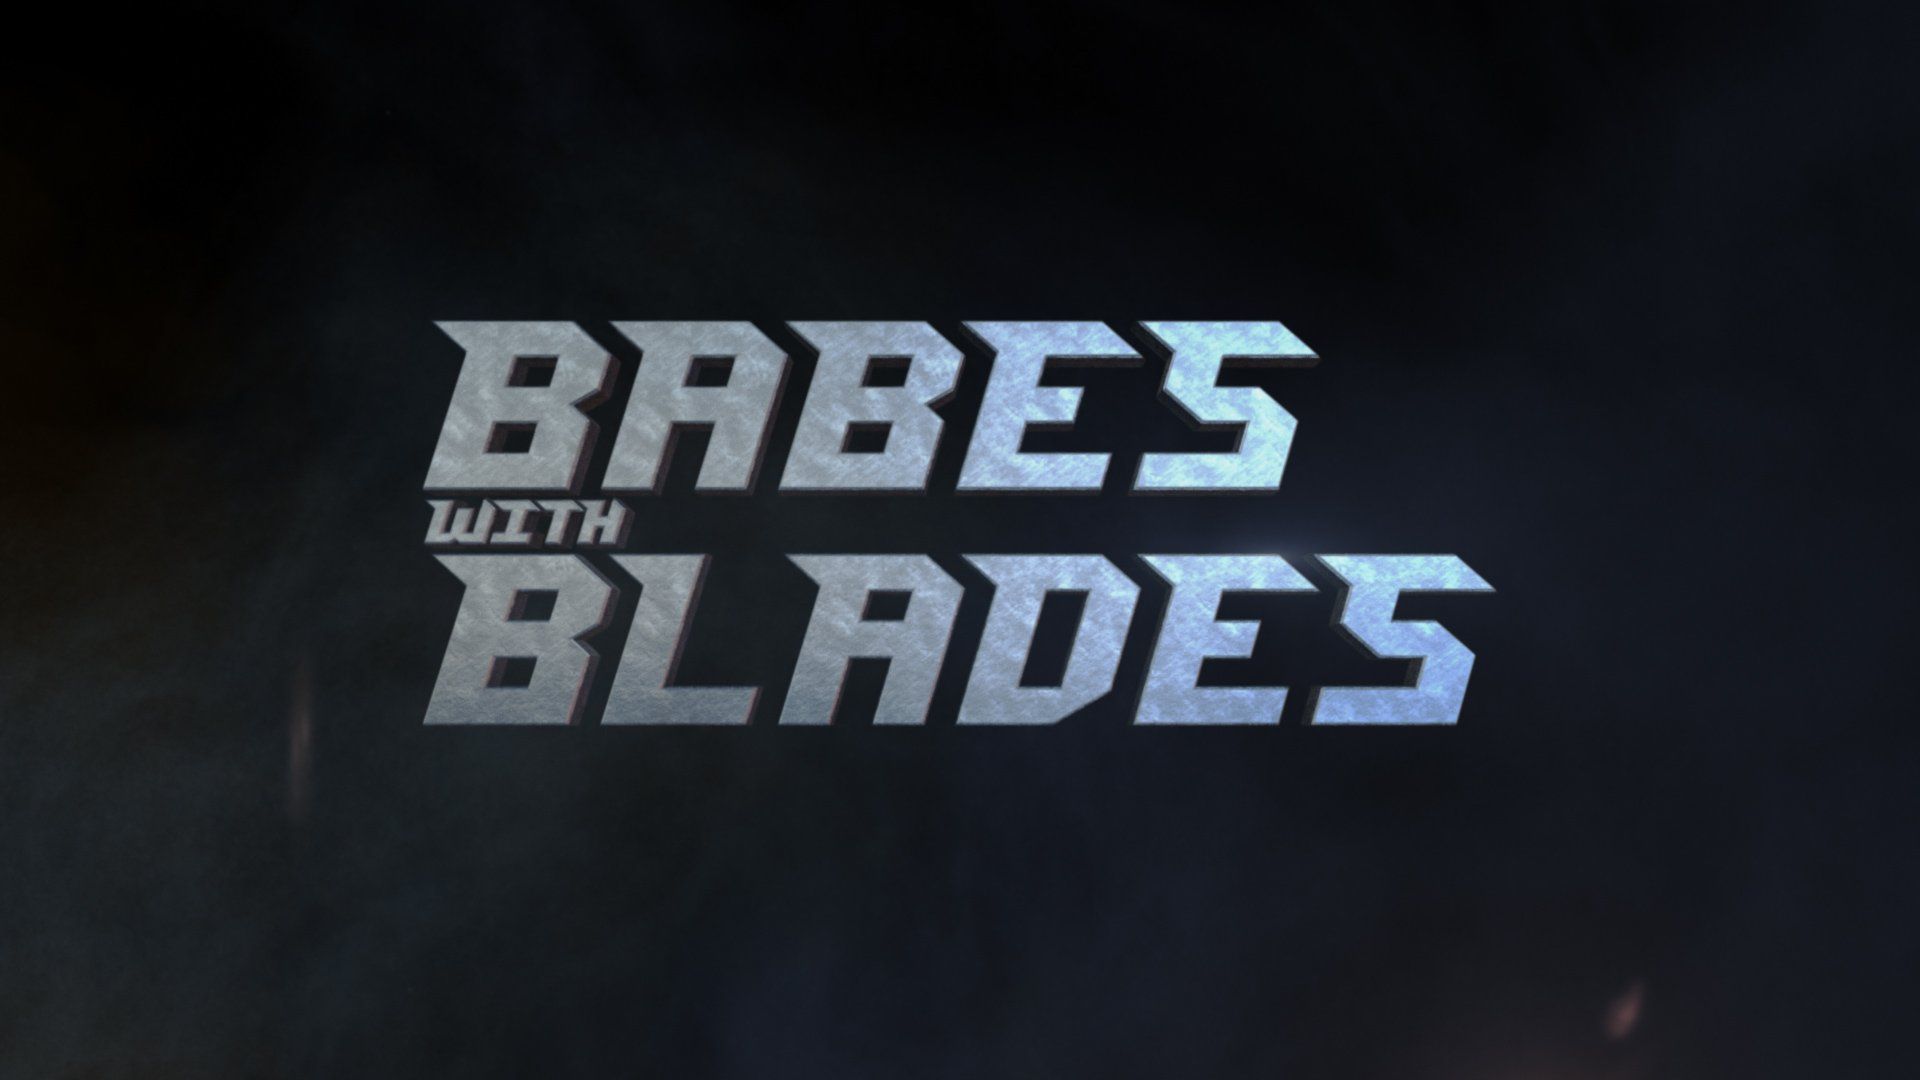 (c) Babeswithblades.co.uk